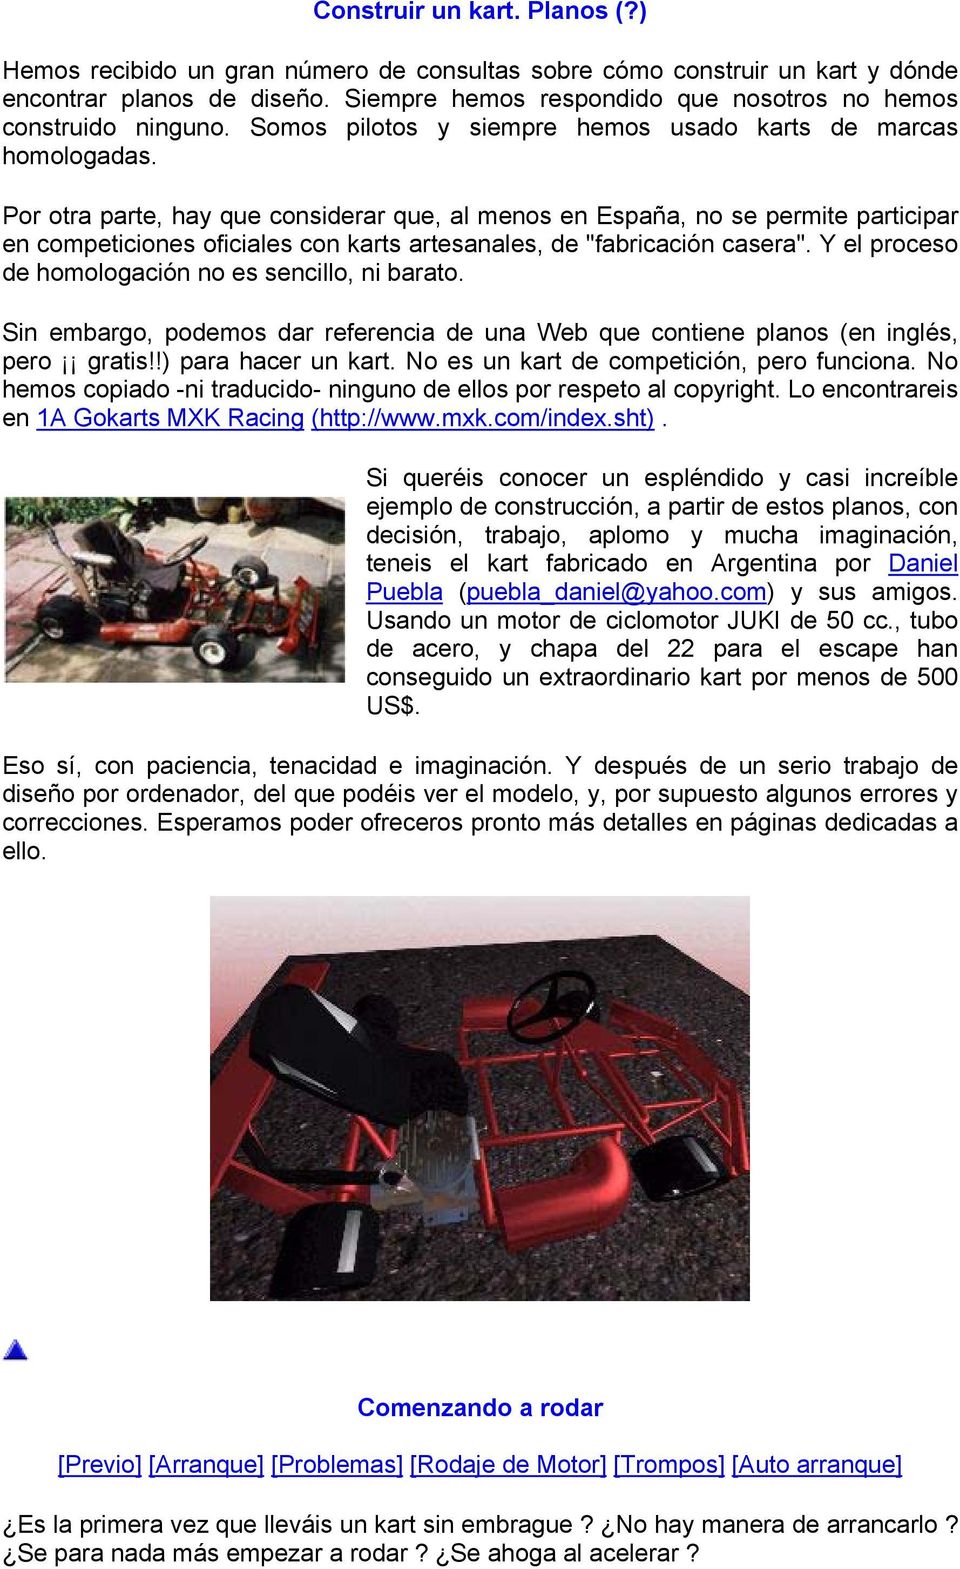 Por otra parte, hay que considerar que, al menos en España, no se permite participar en competiciones oficiales con karts artesanales, de "fabricación casera".